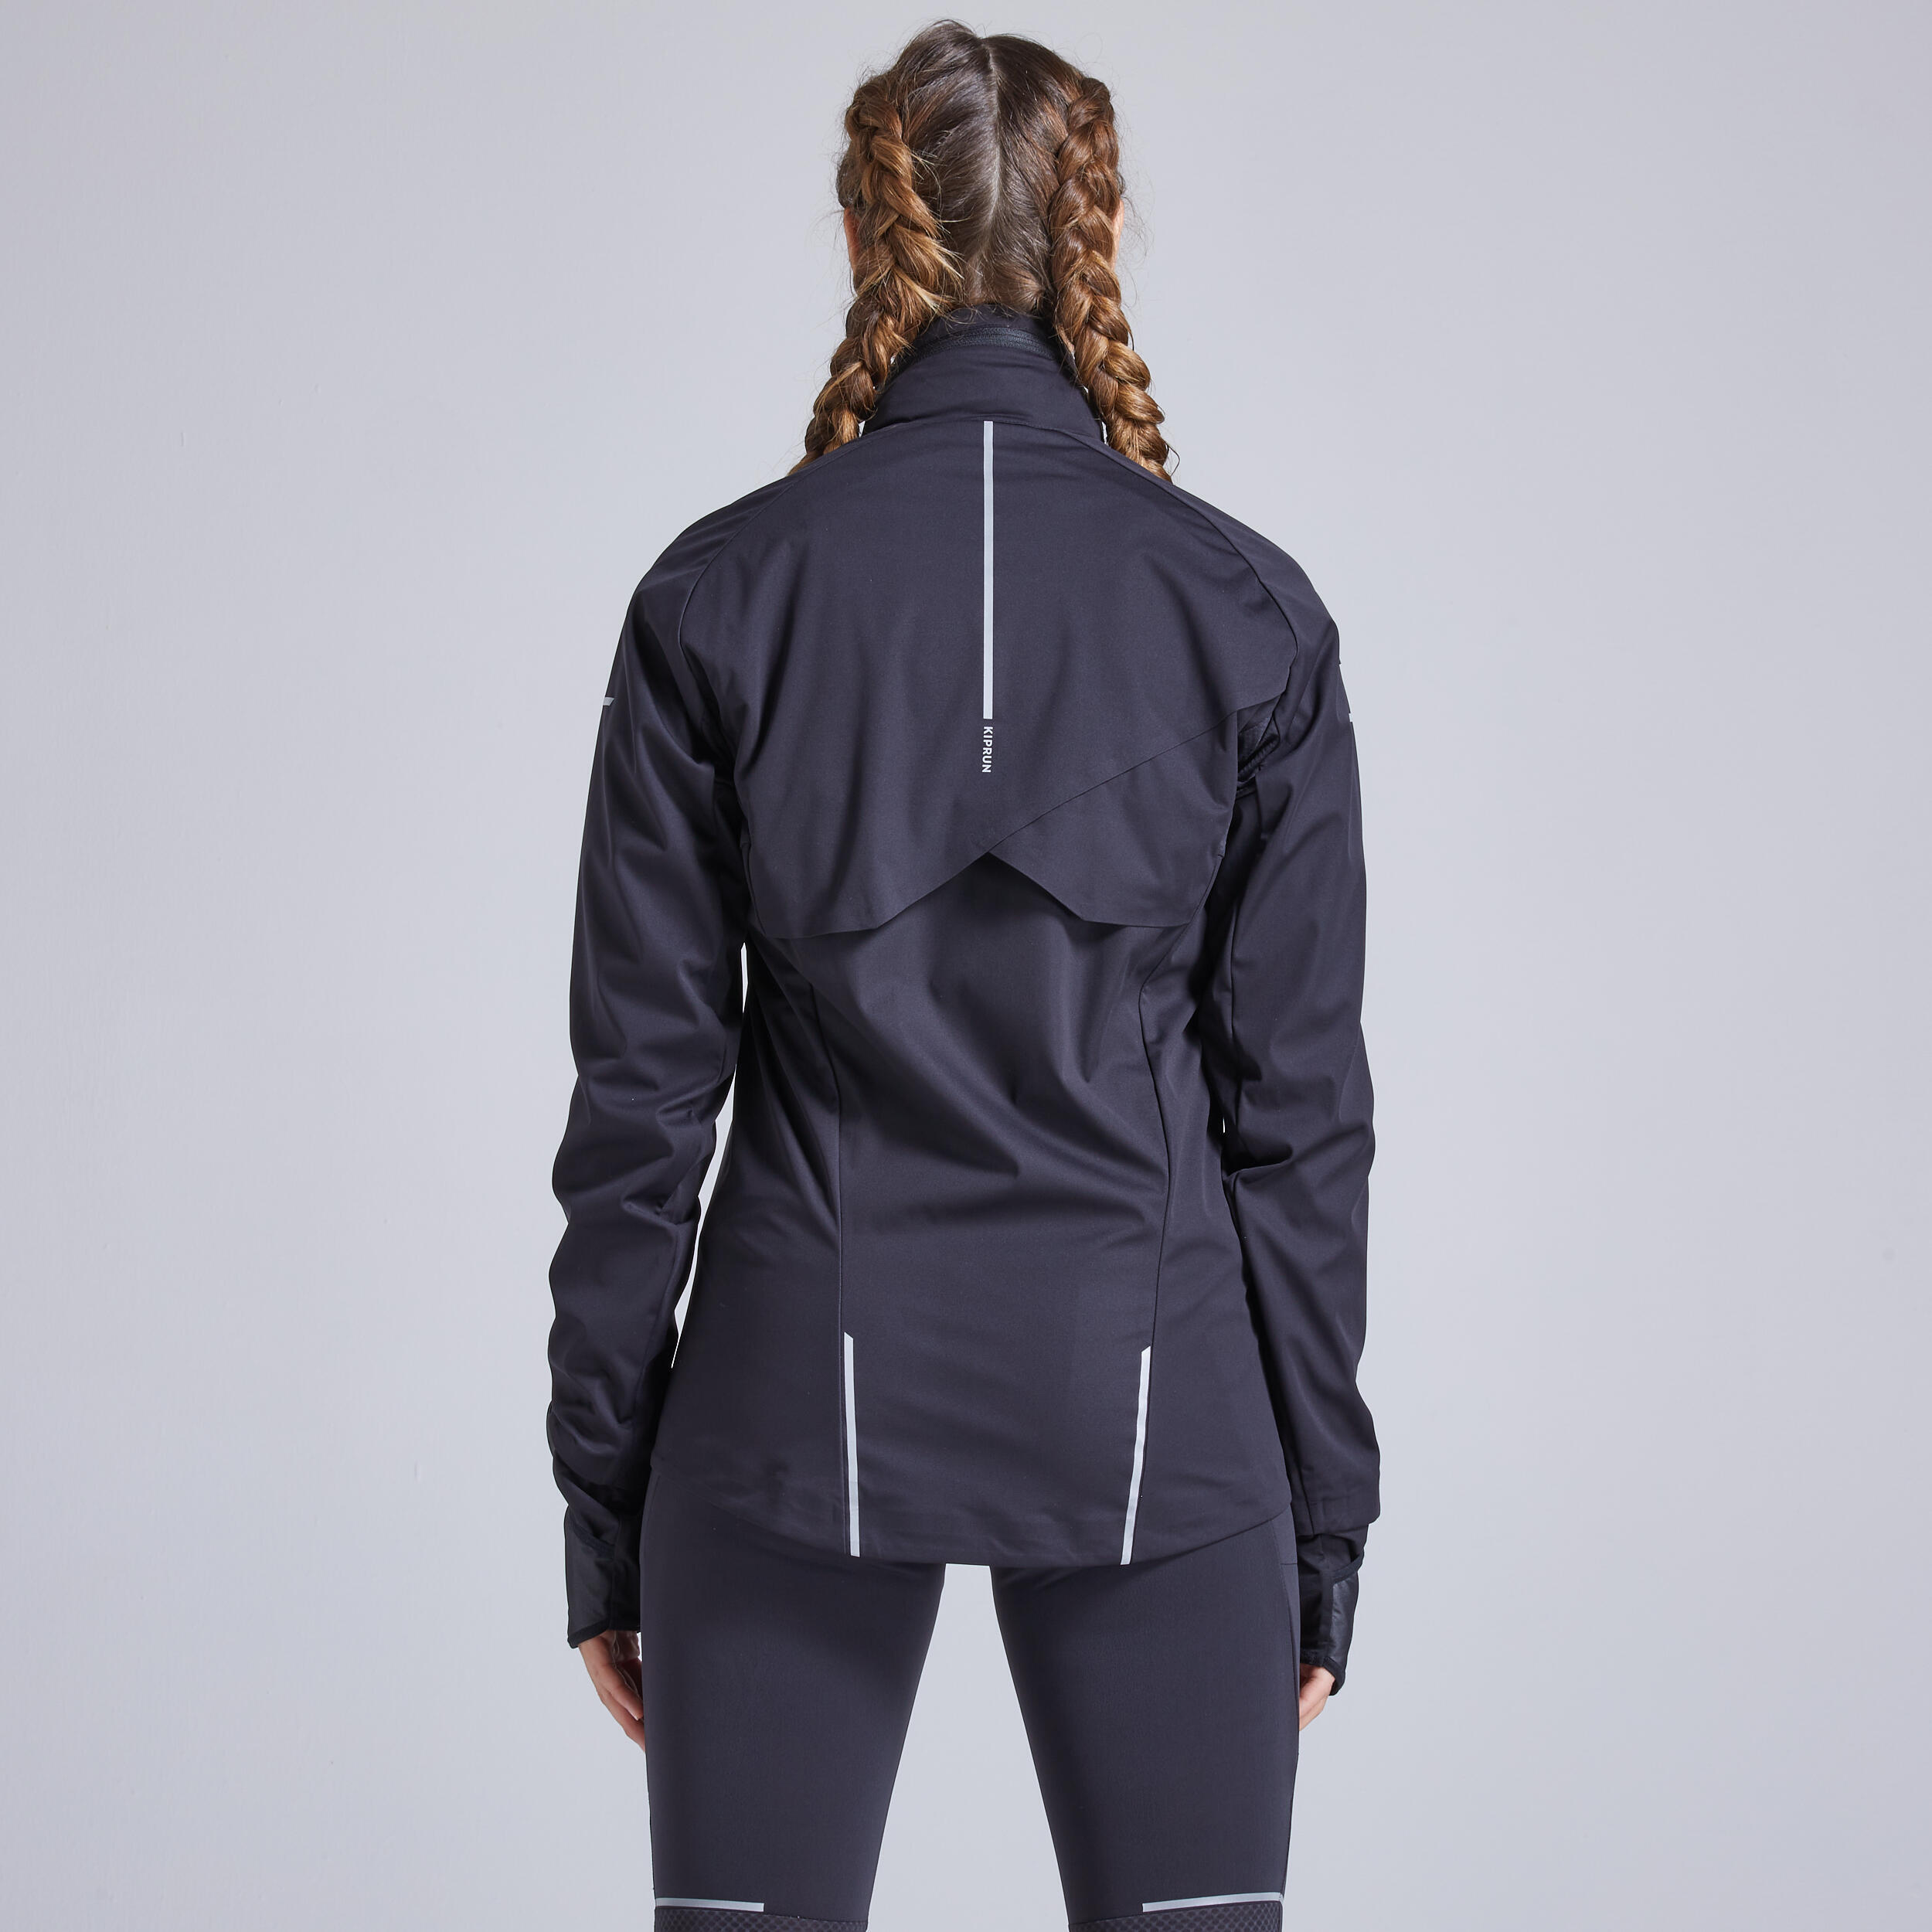 Kiprun Warm Regul Women's Running Water Repellent Windproof Jacket - Black 2/12